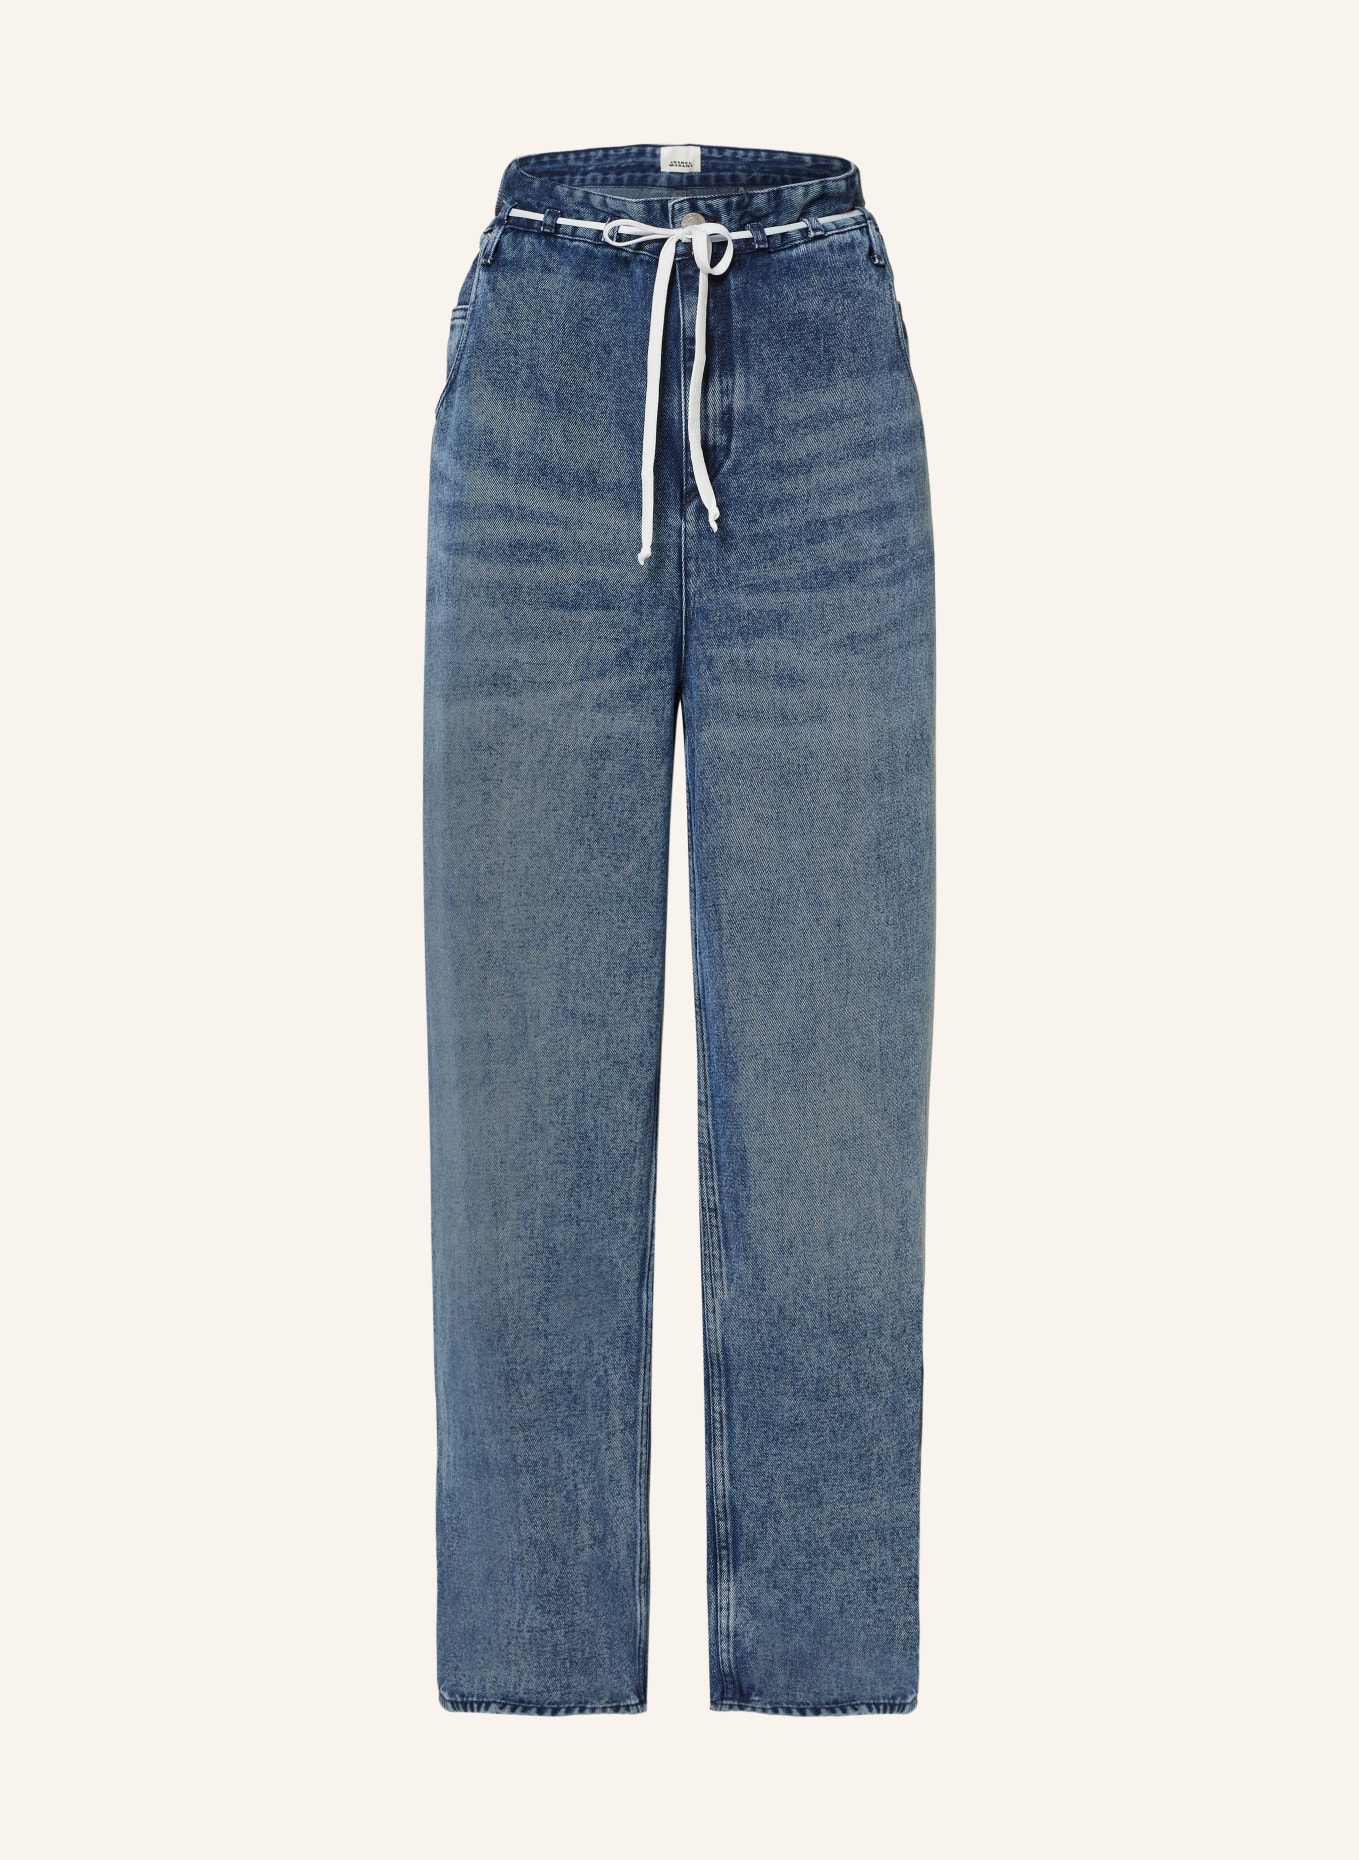 MARANT ÉTOILE Paperbag-Jeans JORDY, Farbe: 30LU LIGHT BLUE (Bild 1)